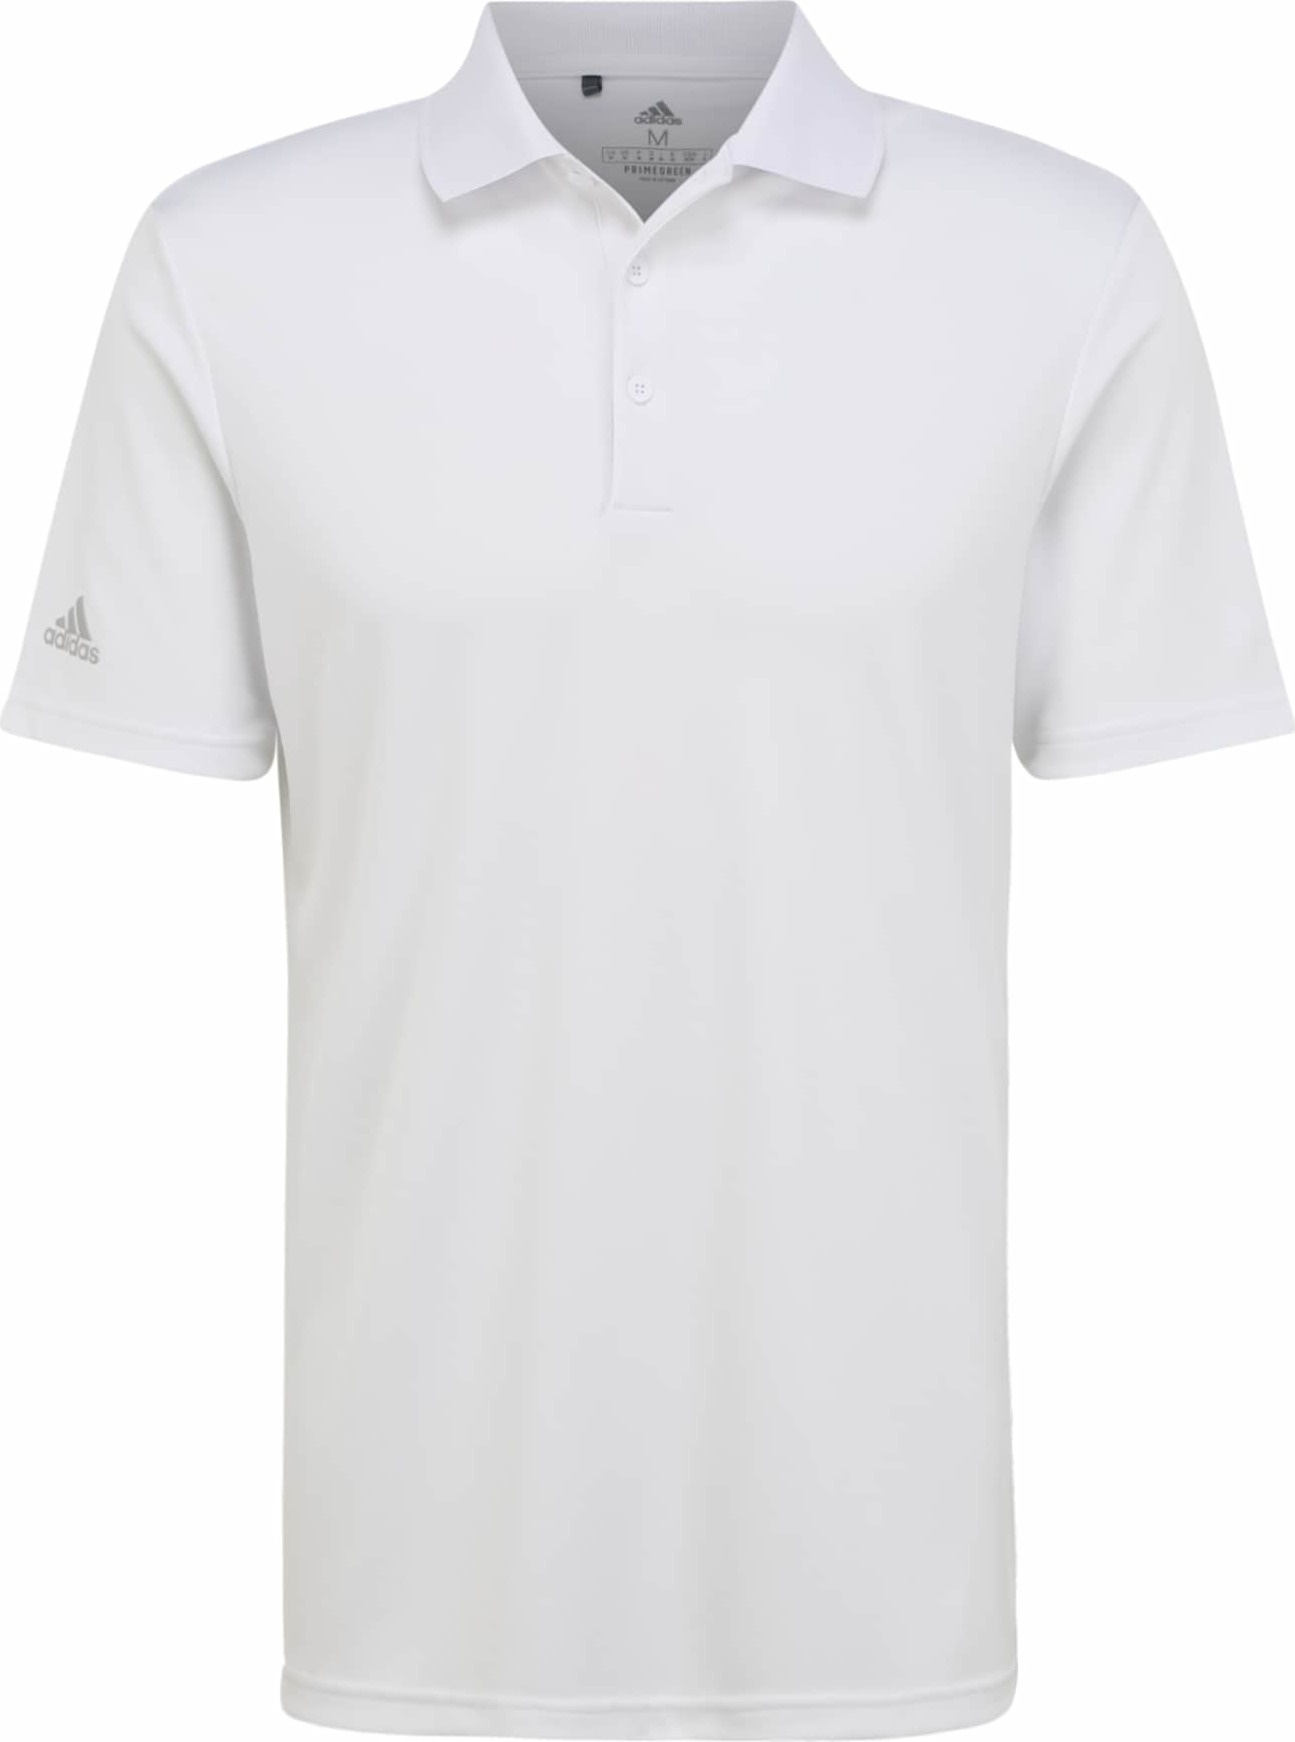 ADIDAS GOLF Funkční tričko stříbrná / bílá